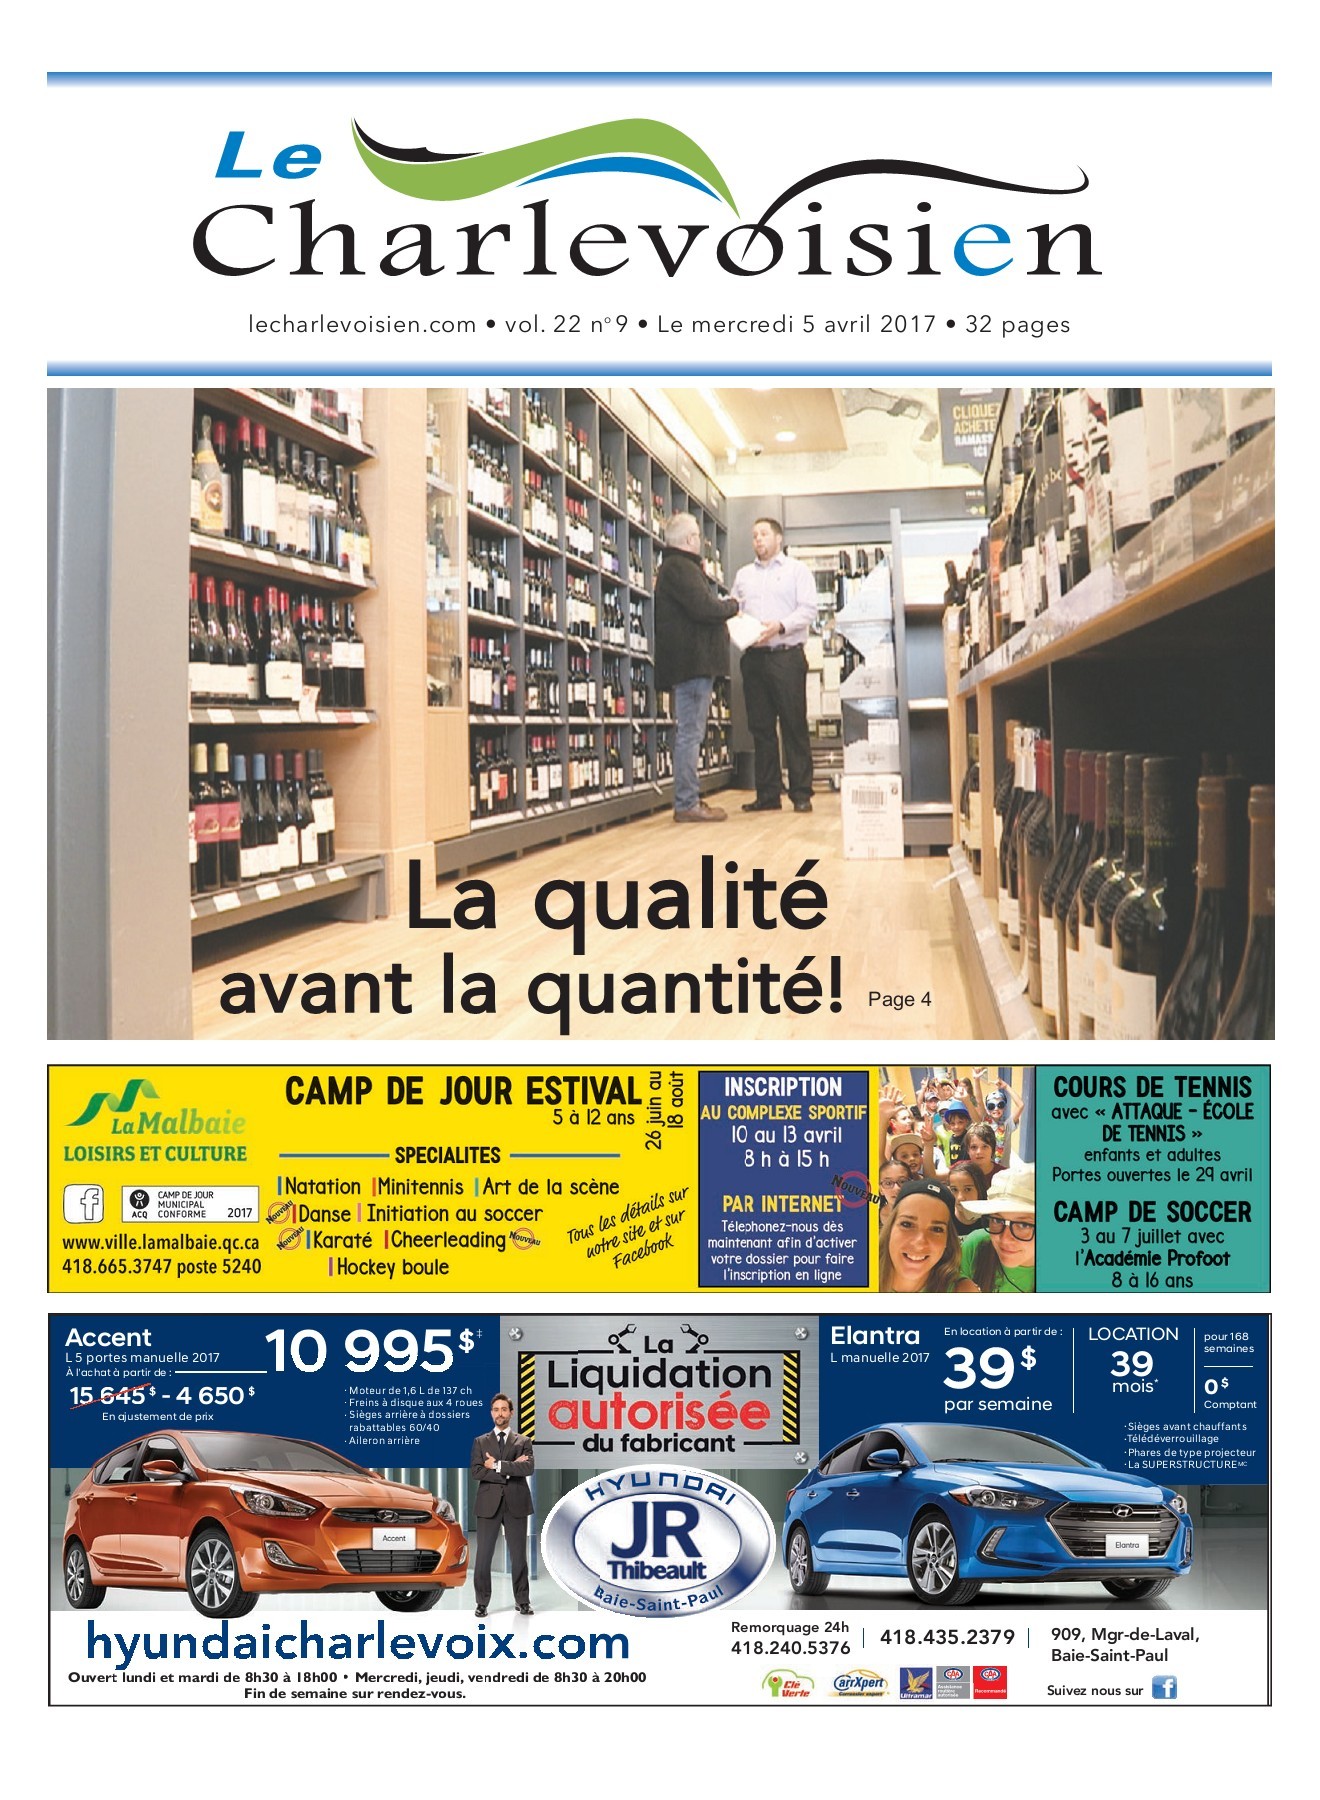 Chocolat De Noel Leclerc Beau Le Charlevoisien 5 Avril 2017 Pages 1 32 Text Version